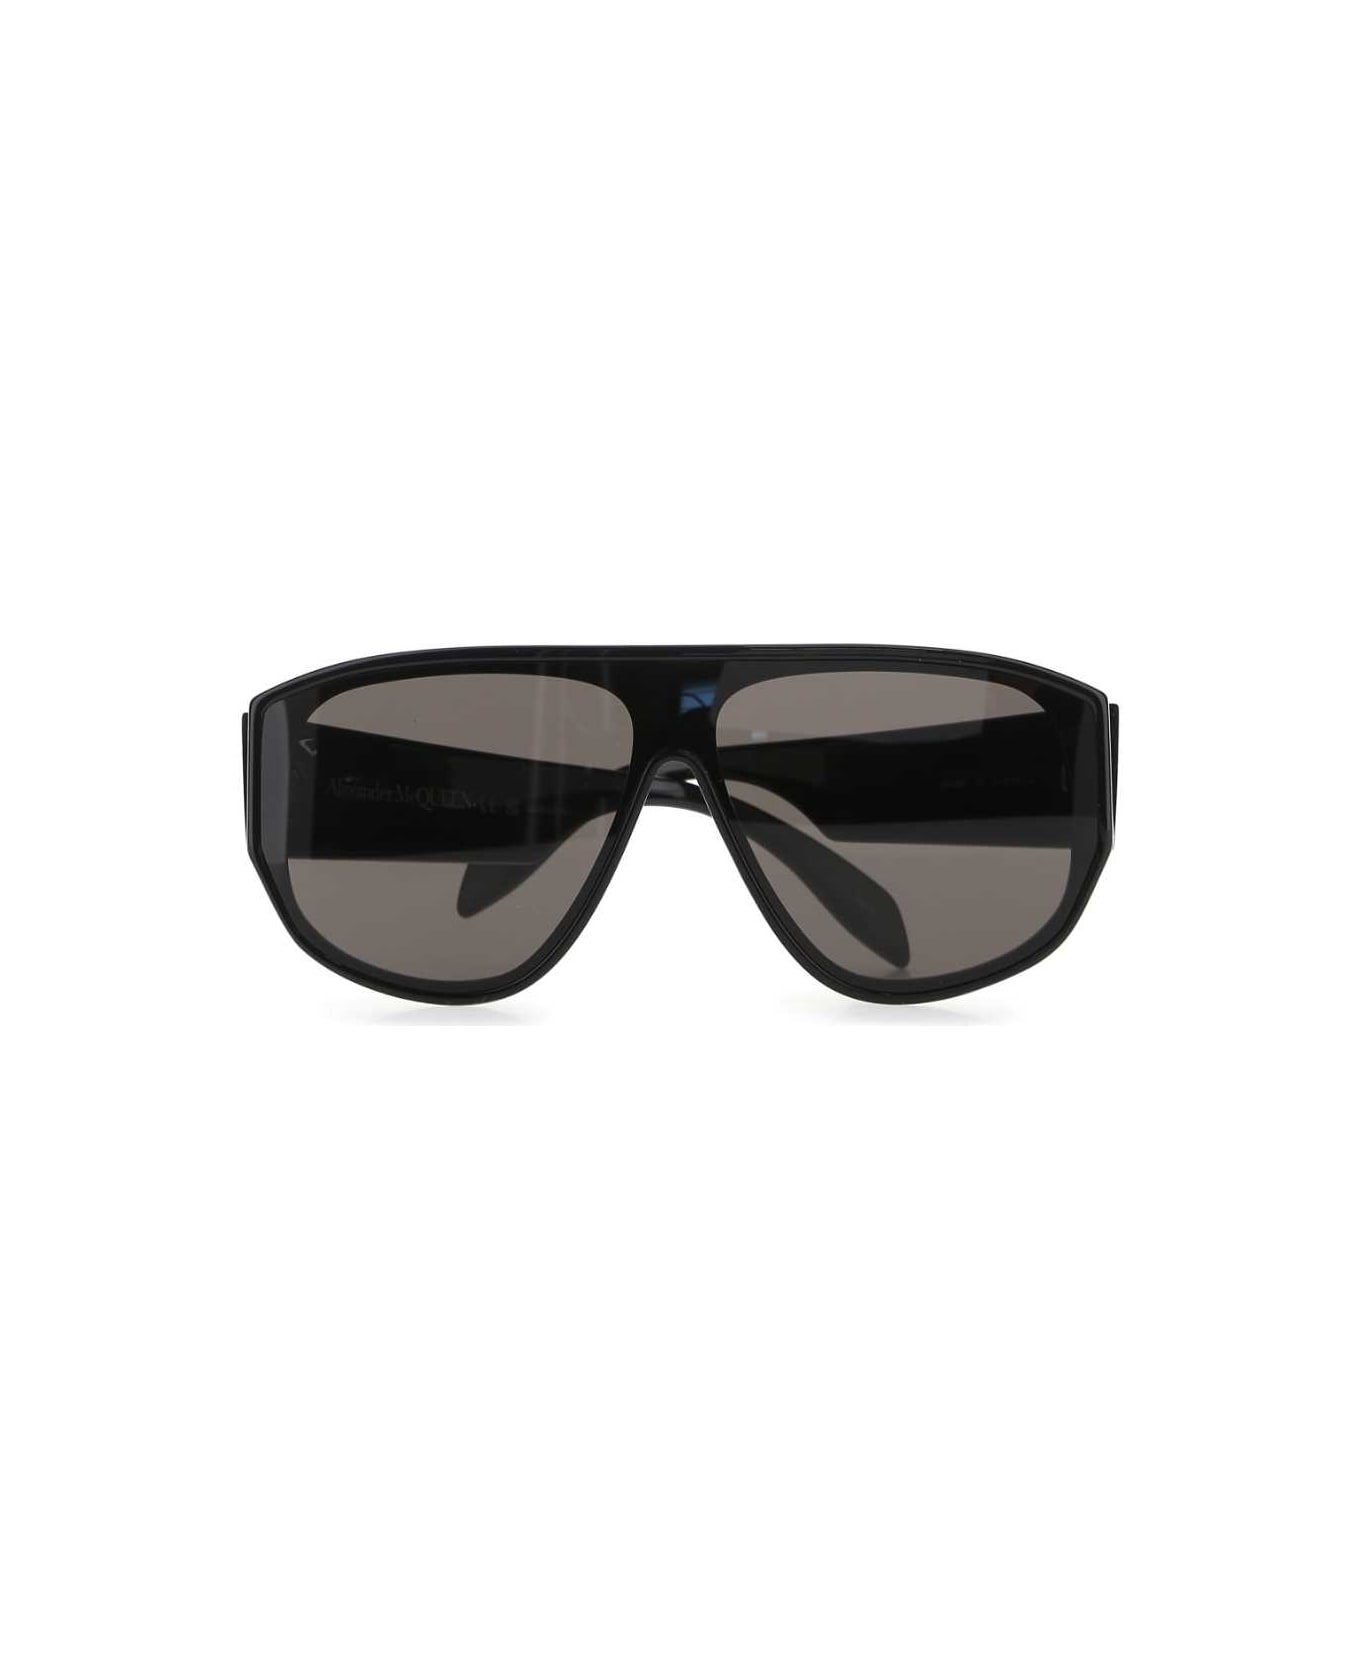 Alexander McQueen Black Acetate Sunglasses - 1056